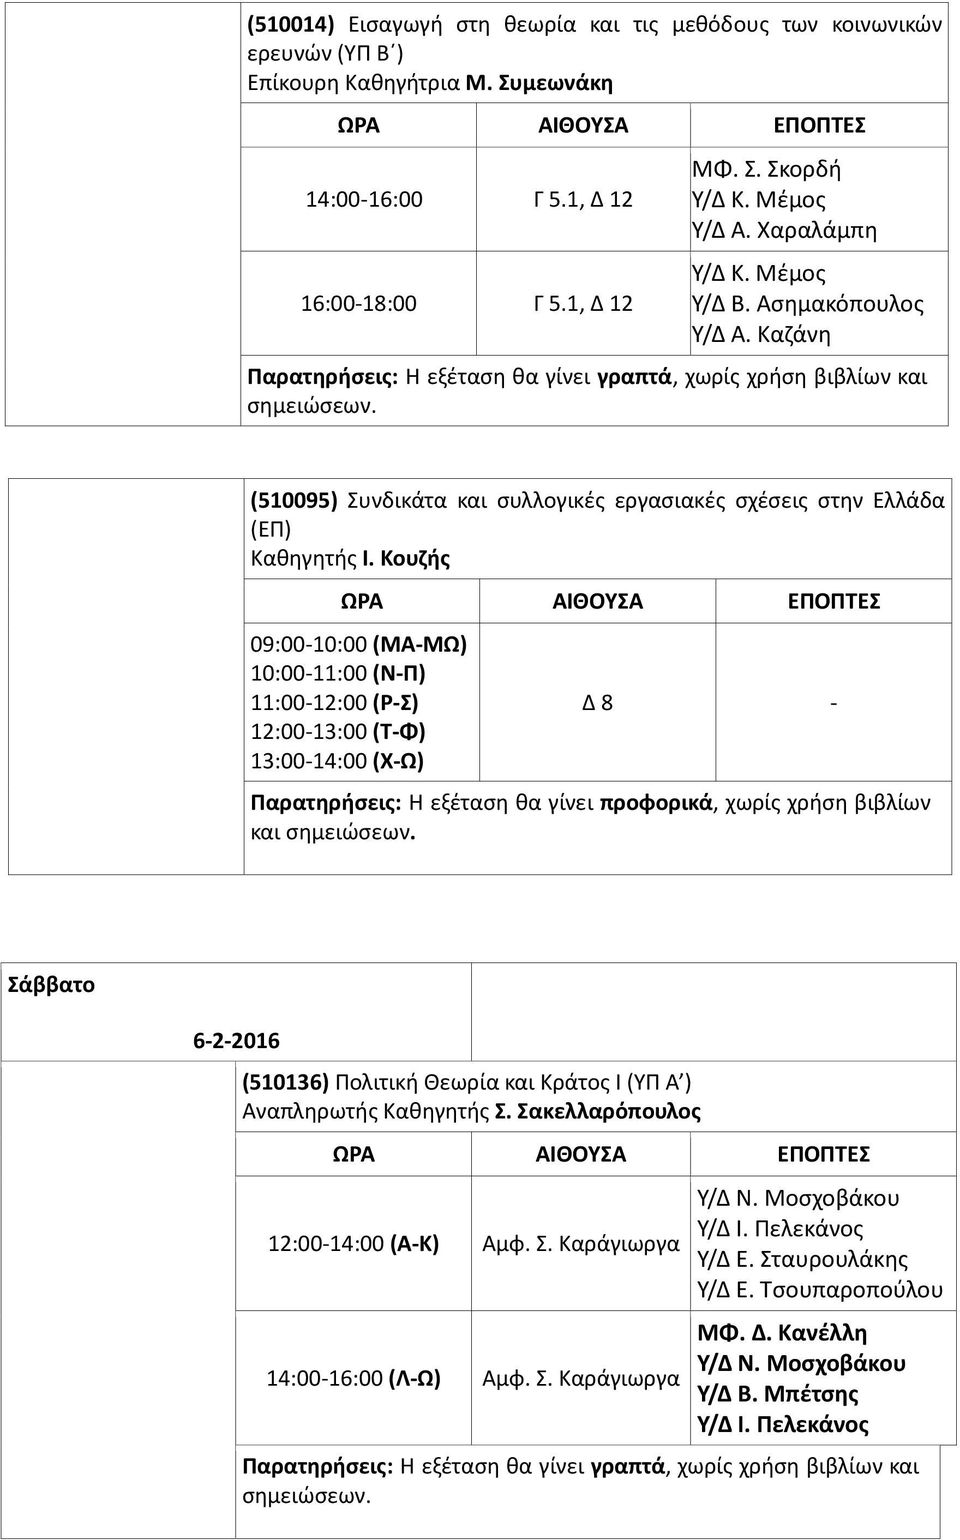 Καζάνη (510095) Συνδικάτα και συλλογικές εργασιακές σχέσεις στην Ελλάδα (ΕΠ) 09:00-10:00 (ΜΑ-ΜΩ) 10:00-11:00 (Ν-Π) 11:00-12:00 (Ρ-Σ) 12:00-13:00 (Τ-Φ) 13:00-14:00 (Χ-Ω) και Σάββατο